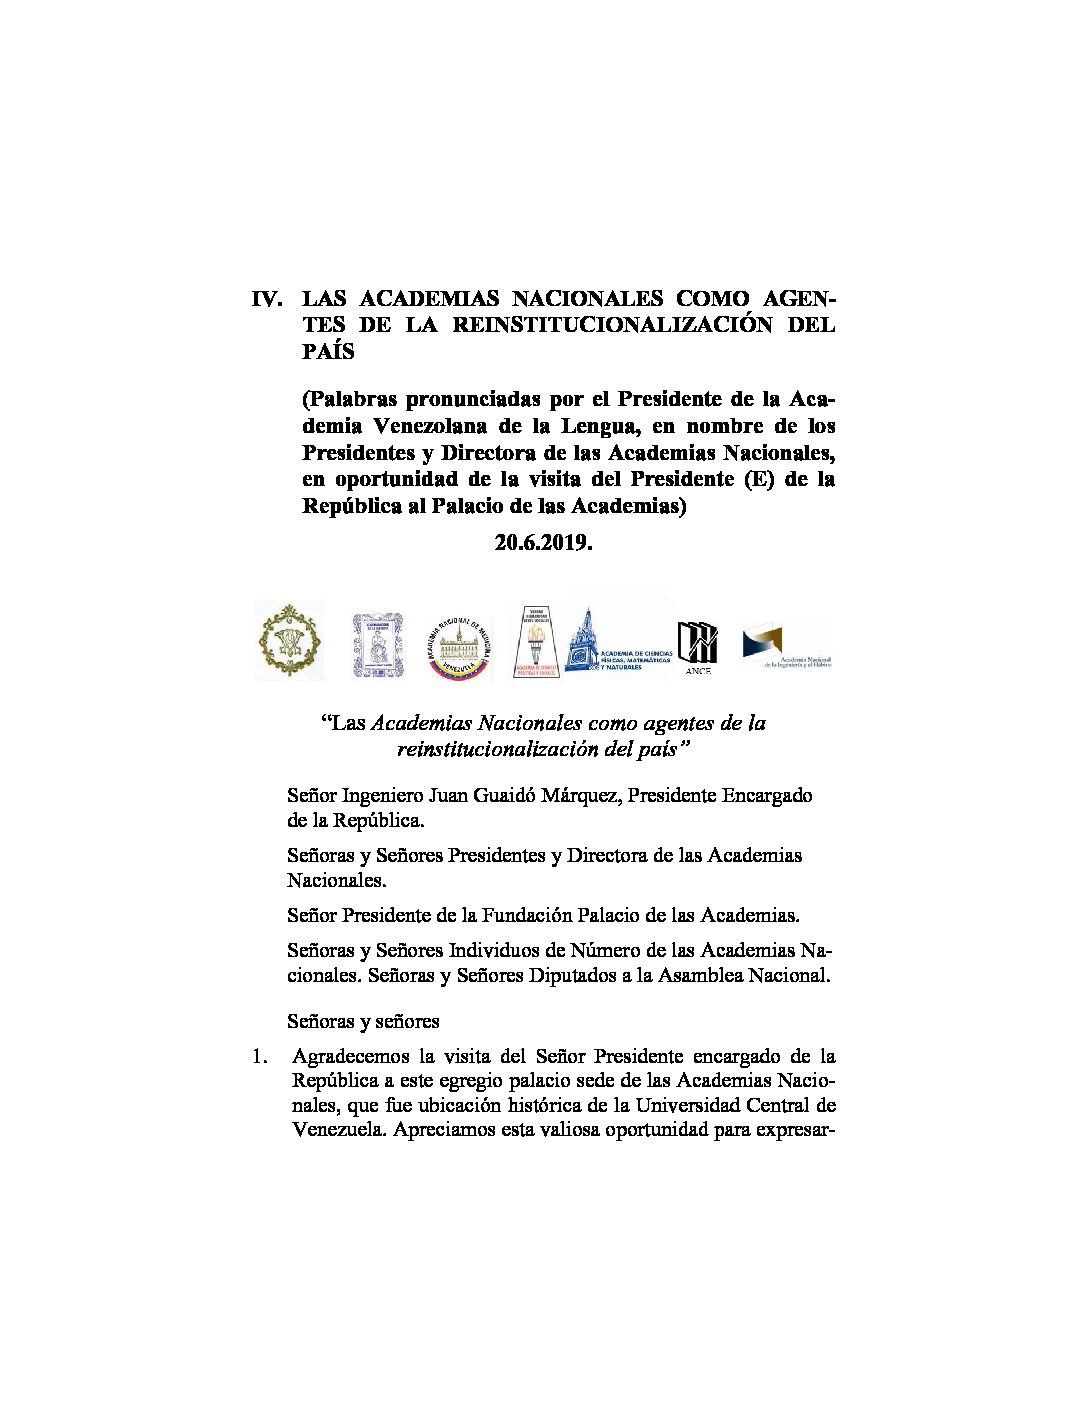 Las Academias Nacionales como agentes de la reinstitucionalización del país.